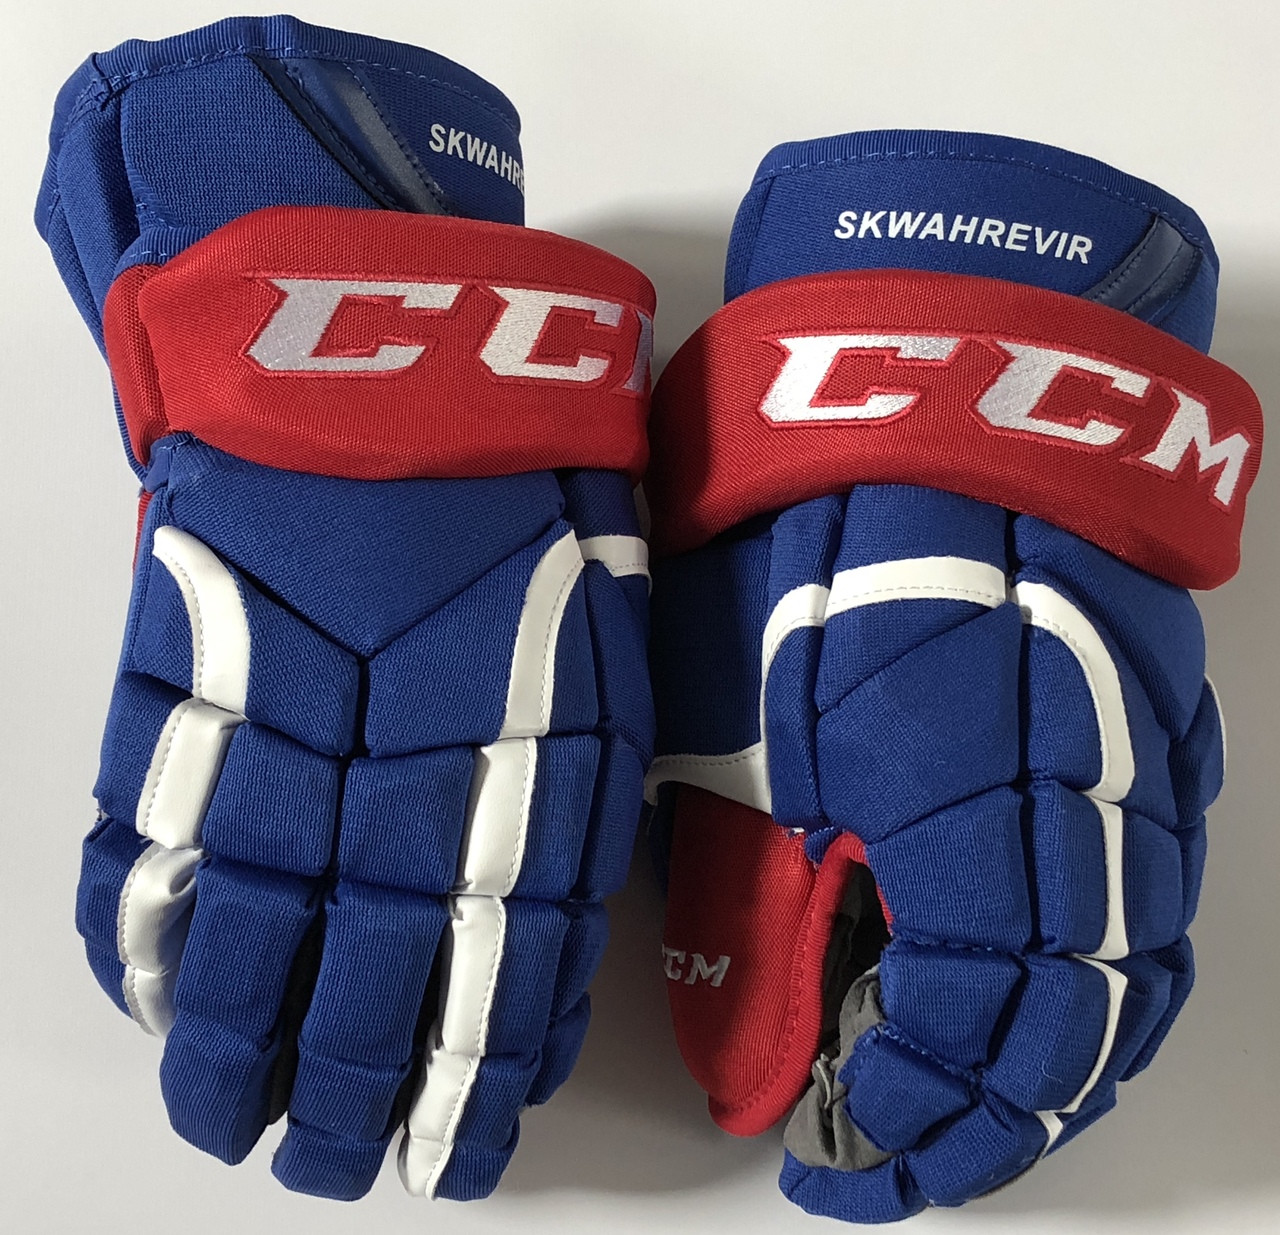 Авито краги хоккейные. Ccm hg12 перчатки. Краги ccm Pro stock hg12 Gloves. Ccm 30k краги. Краги ccm Pro 14.